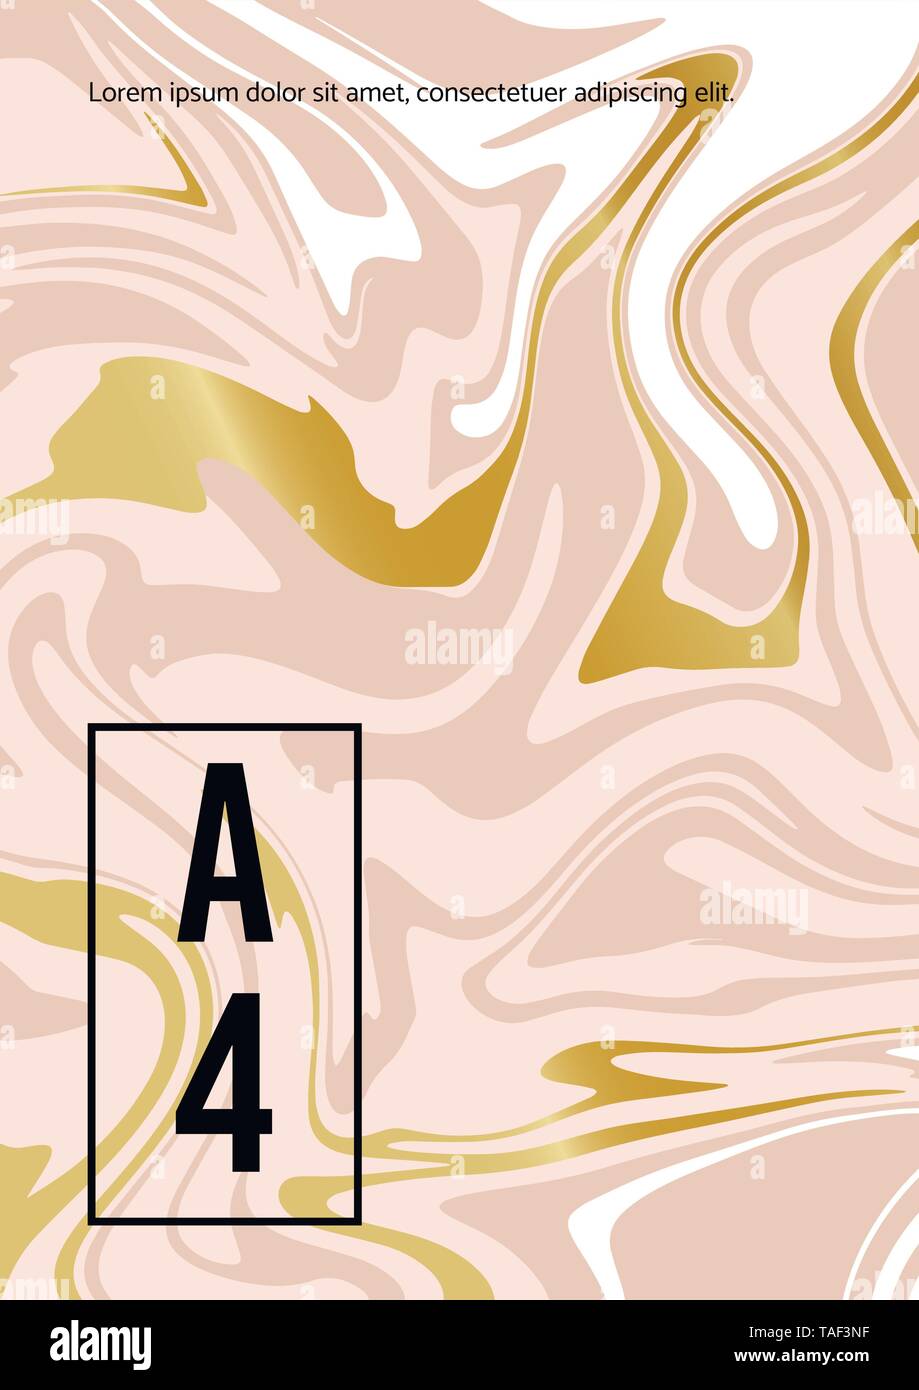 Marmor Abstract Pink Gold weißen Hintergrund. Vektor Textur der Flüssigkeit Farbe. Vorlage A5 A4 A3 für Hochzeit, Einladungen, Banner, Karten Stock Vektor